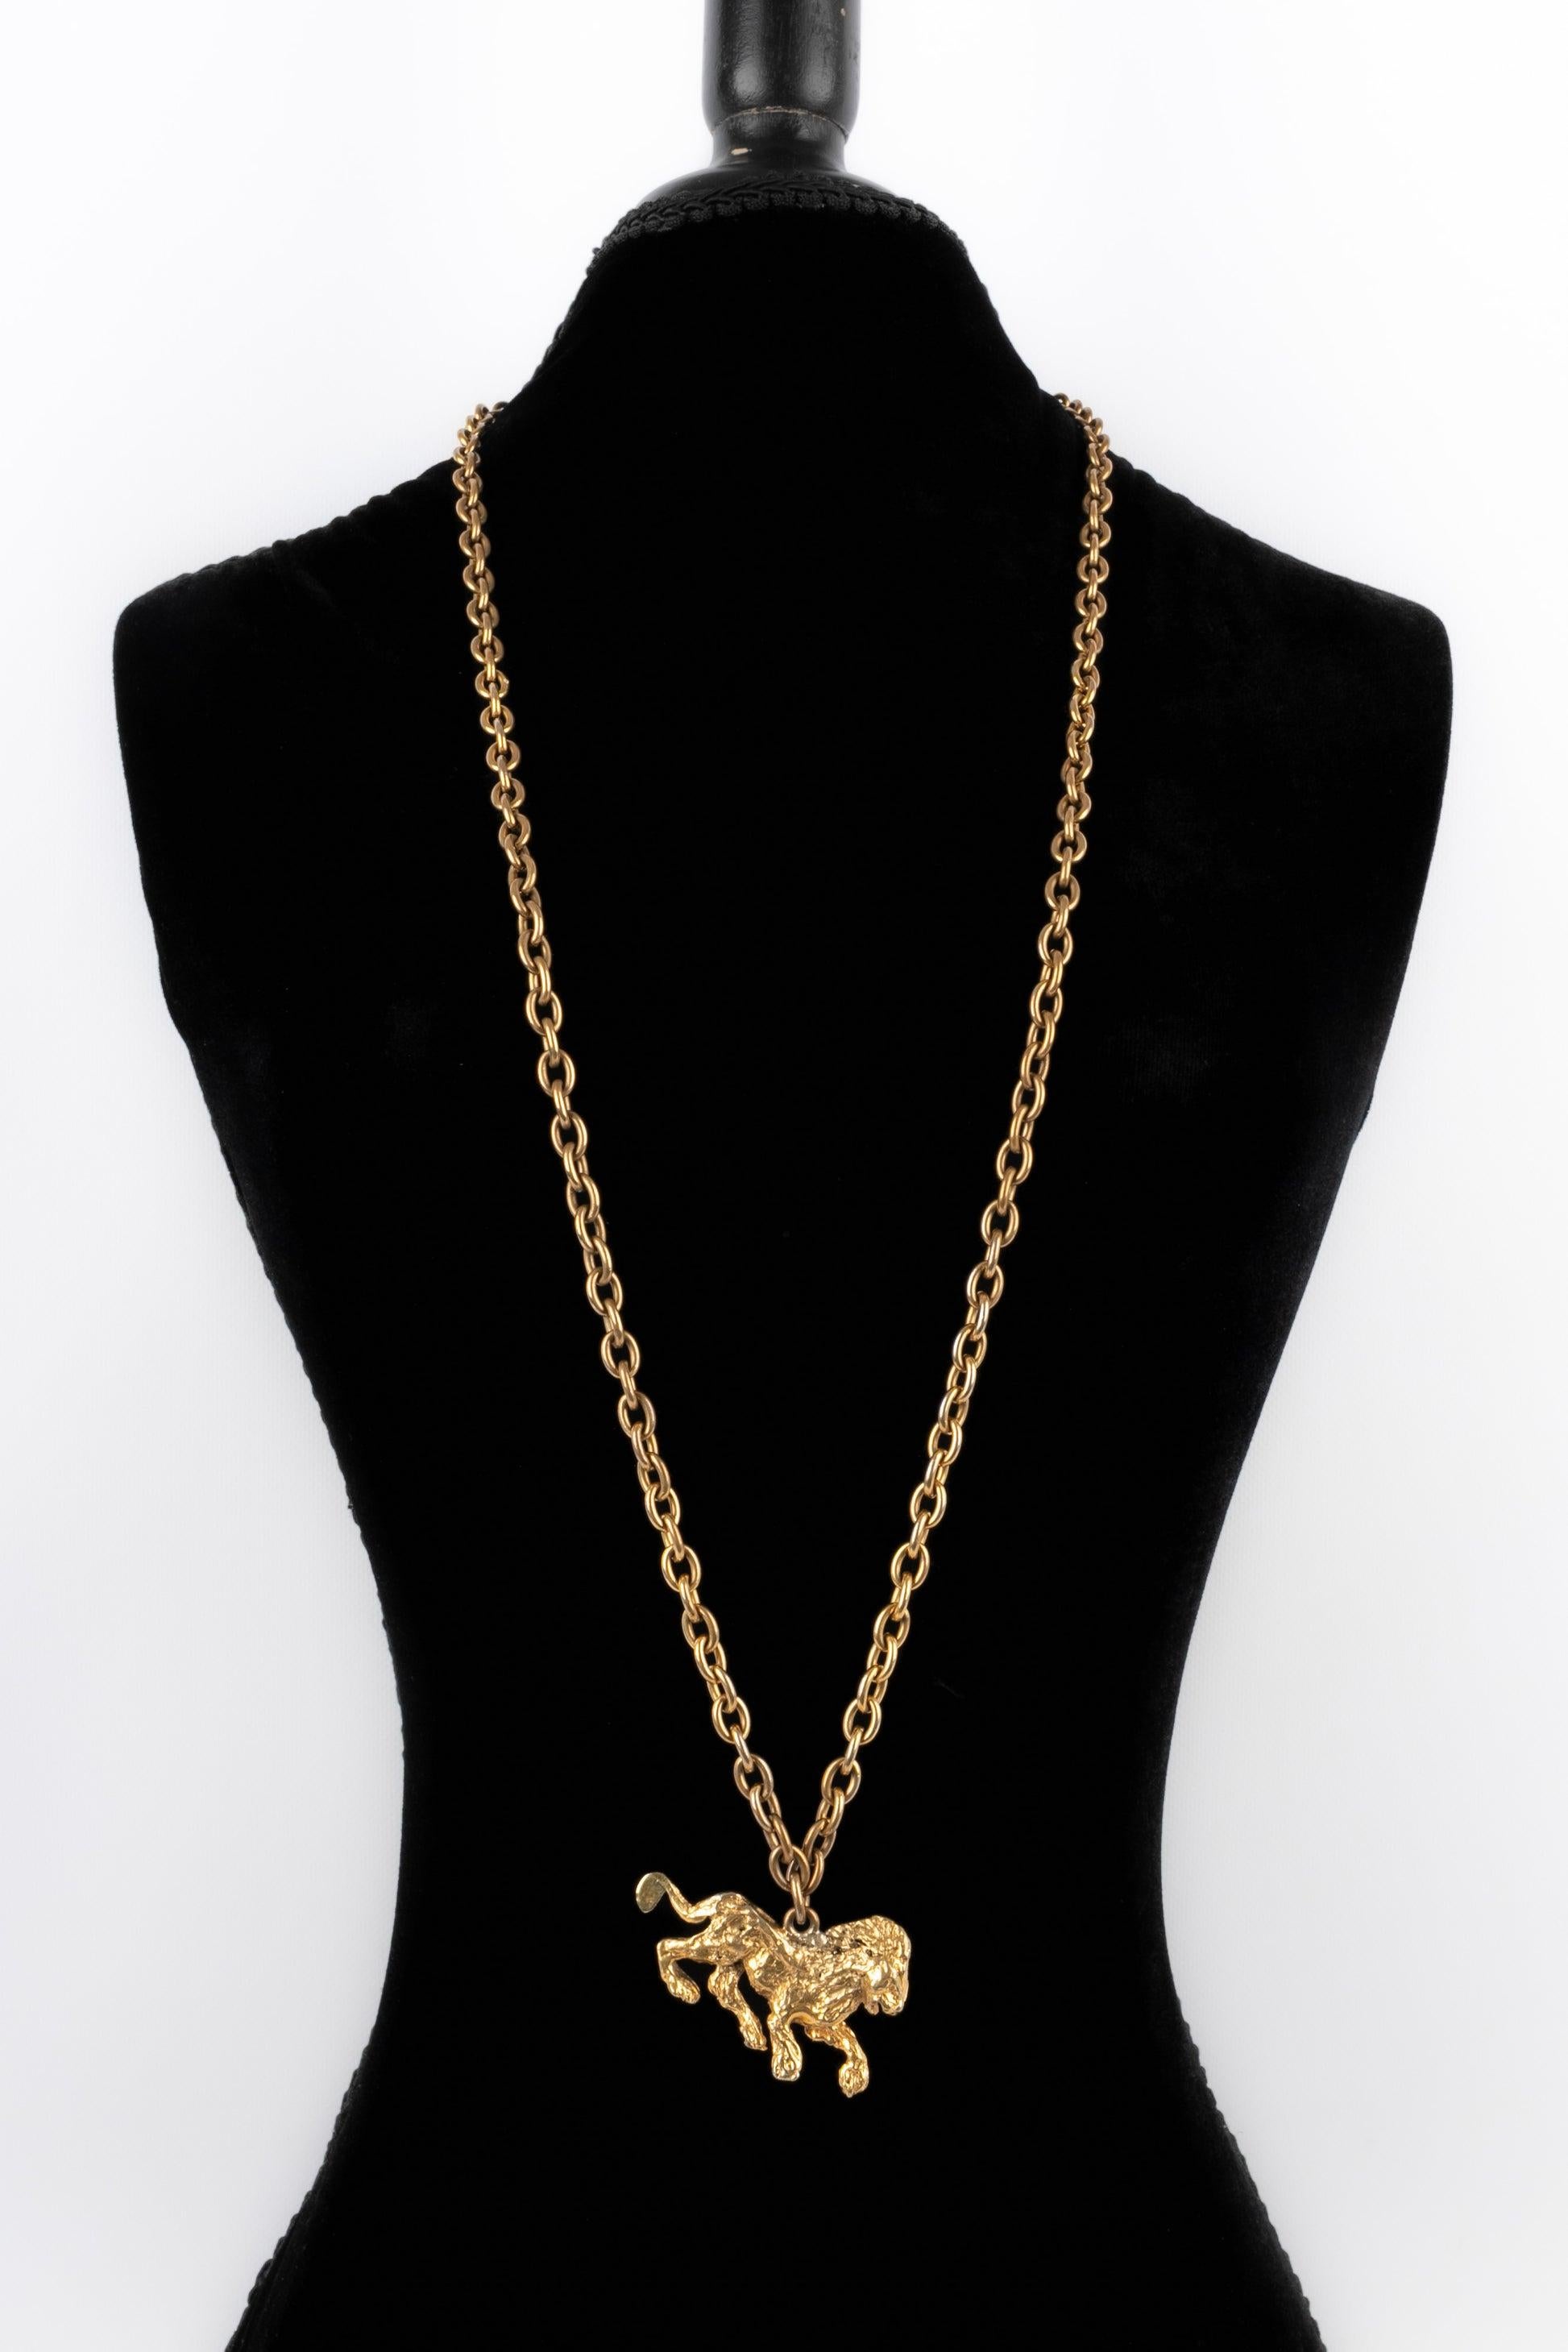 Chanel - (Fabriqué en France) Collier haute couture en métal doré antique avec un pendentif en forme de lion.
 
 Informations complémentaires : 
 Condit : Très bon état.
 Dimensions : Longueur : 100 cm
 
 Référence du vendeur : CB282
